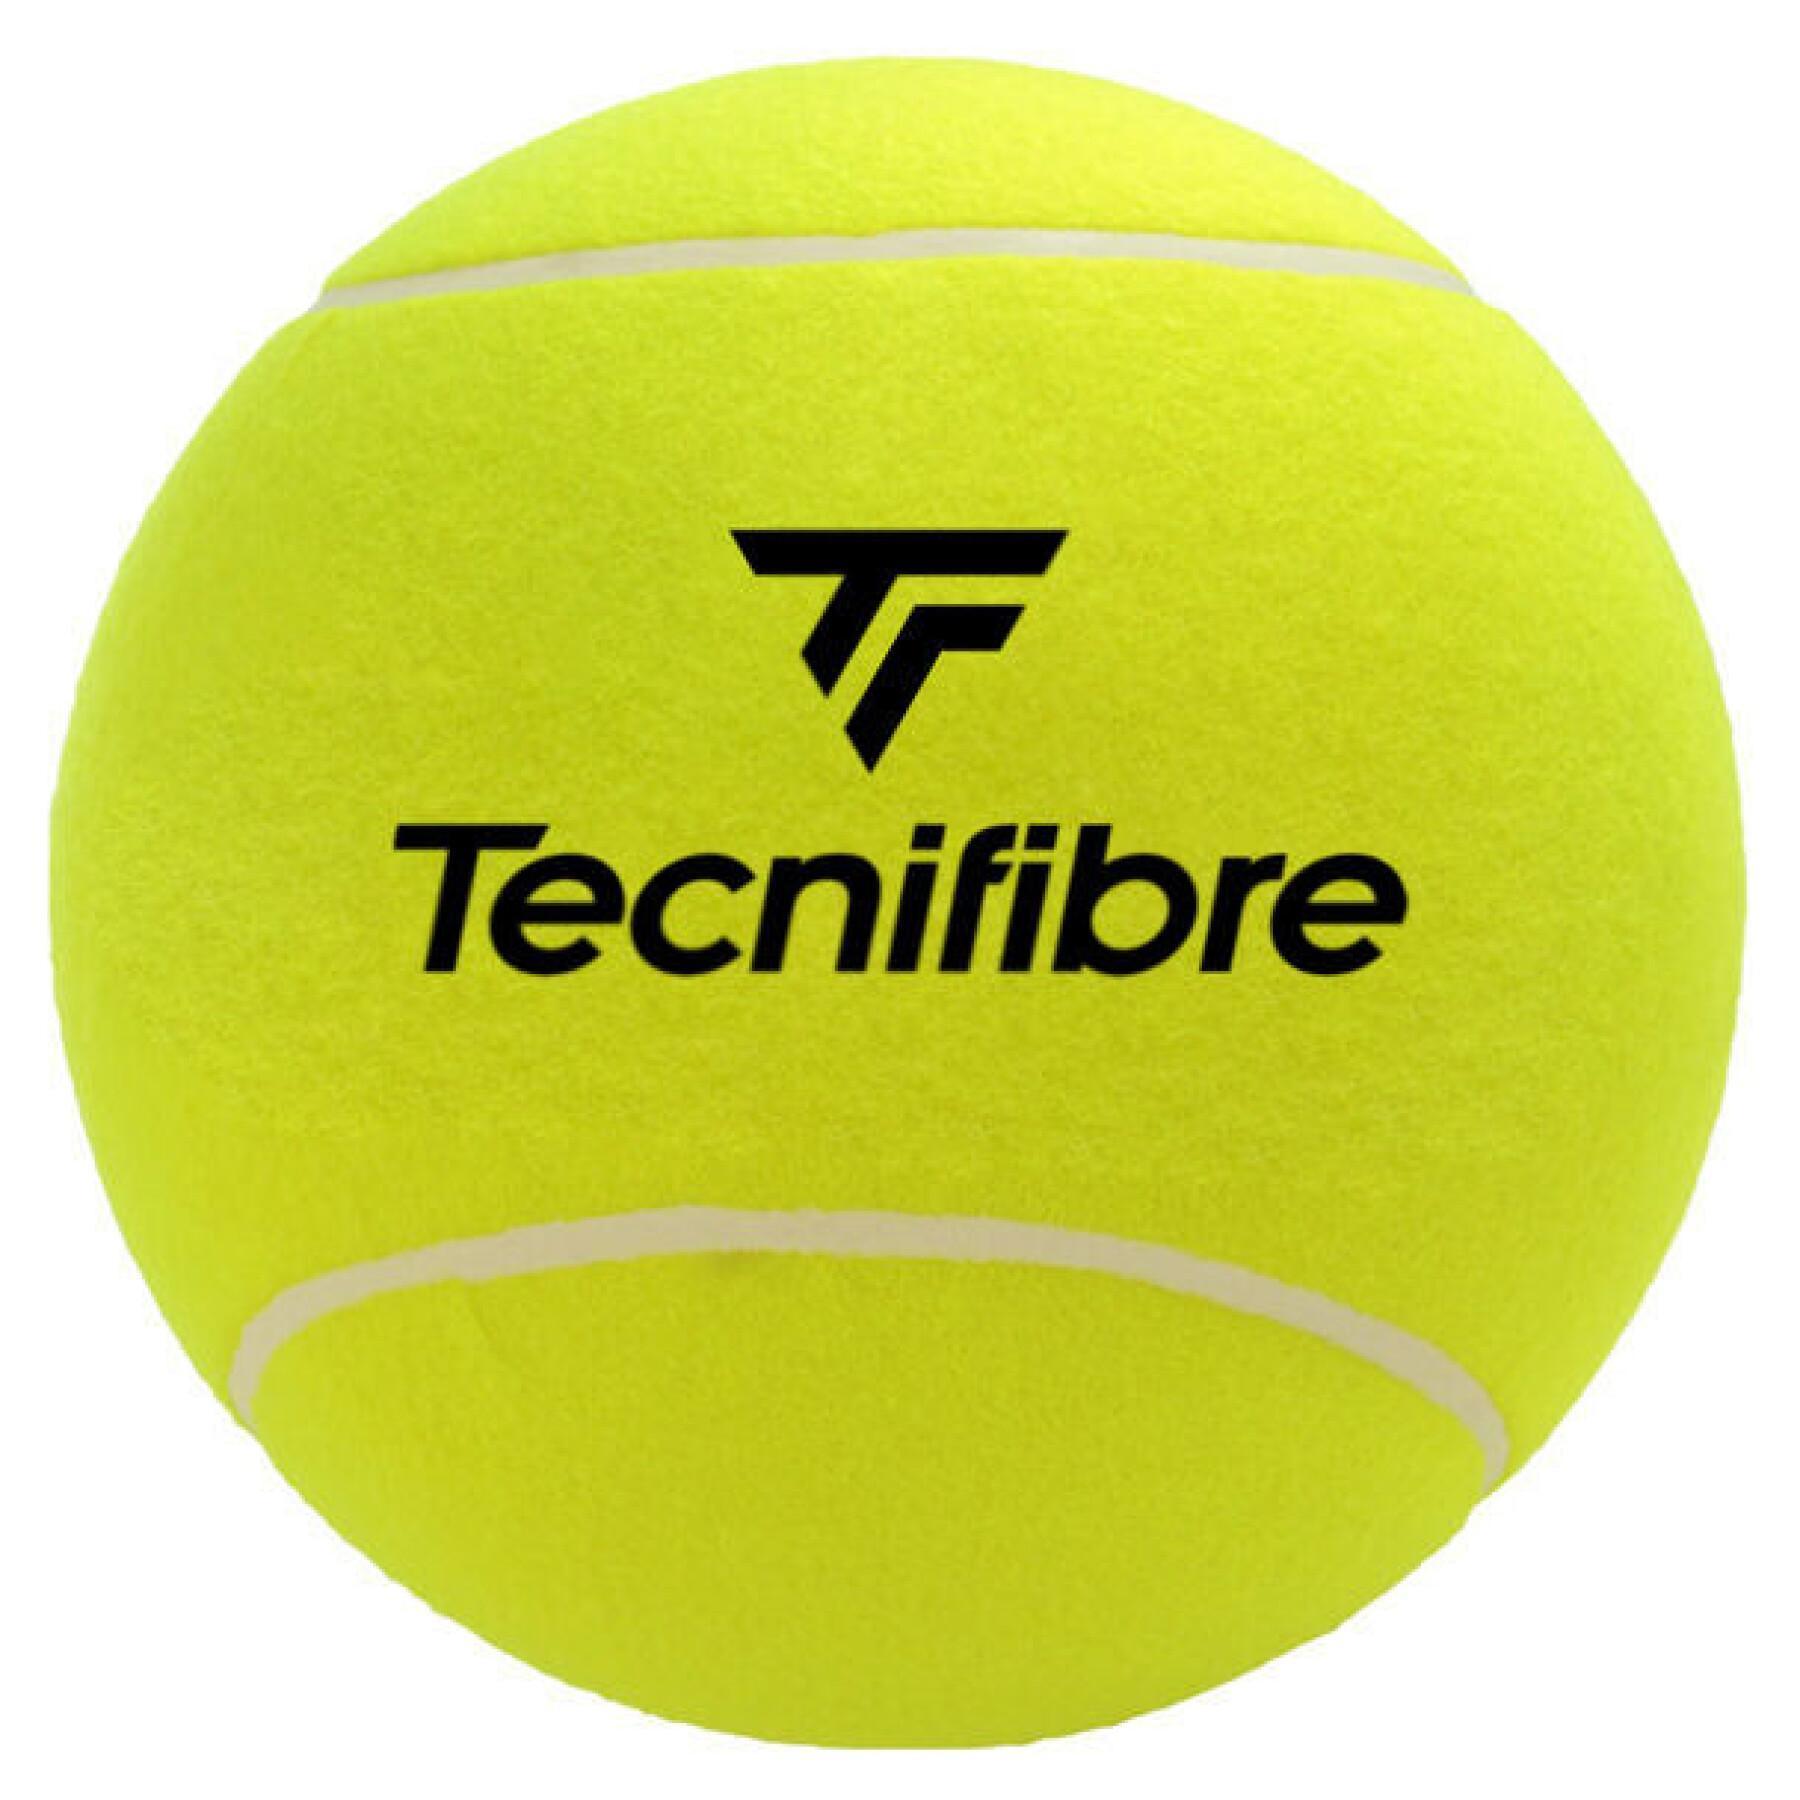 Grosse balle de tennis Tecnifibre 24 cm